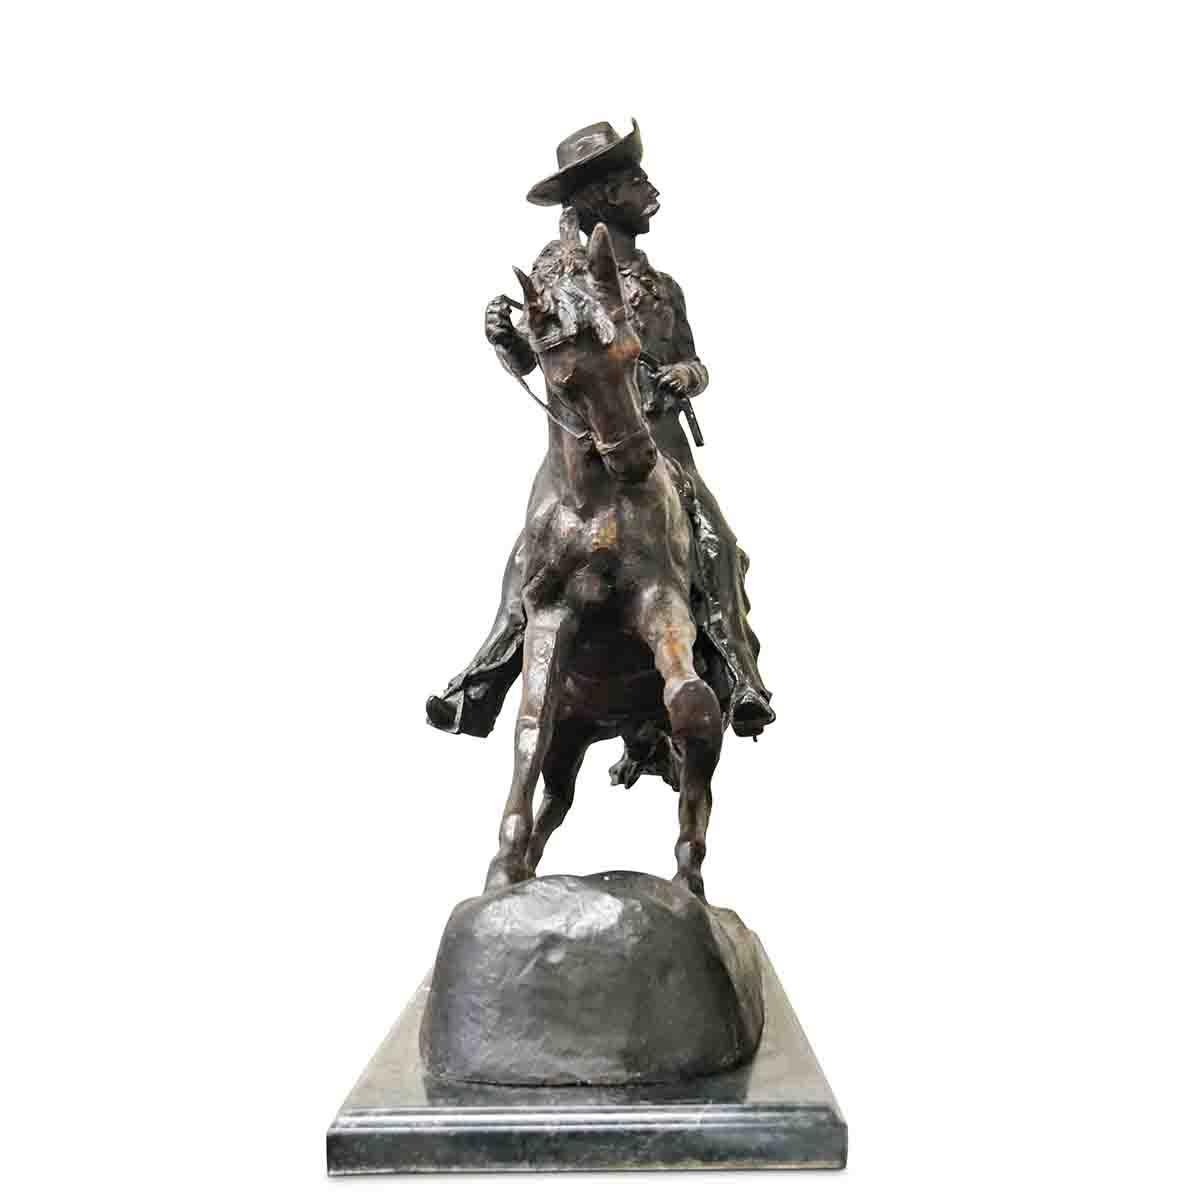 Cowboy, une sculpture en bronze coulé d'après l'original de l'artiste américain Frederic Remington, sur socle en marbre. Empreinte d'une grande tension dramatique, cette sculpture en bronze représente une scène du vieil Ouest américain